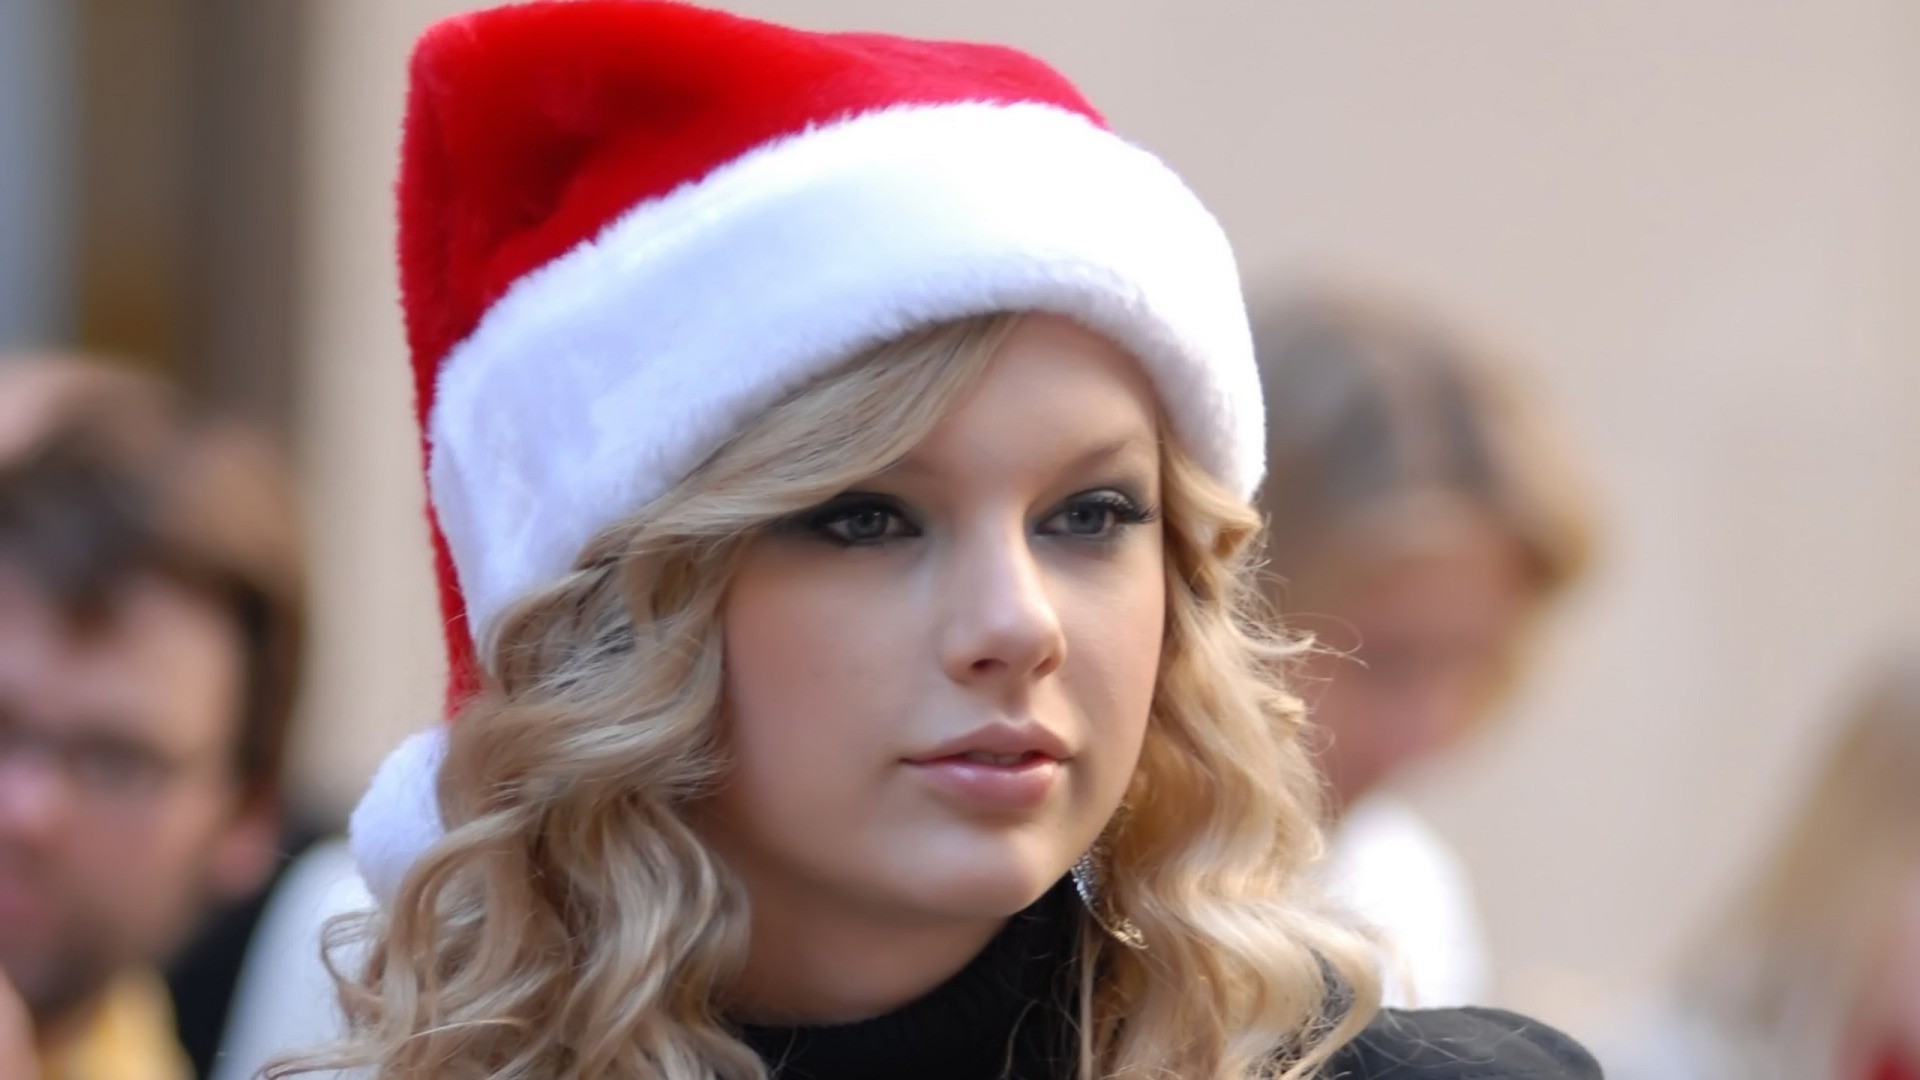 Taylor Swift, Celebrity, Blonde Wallpaper